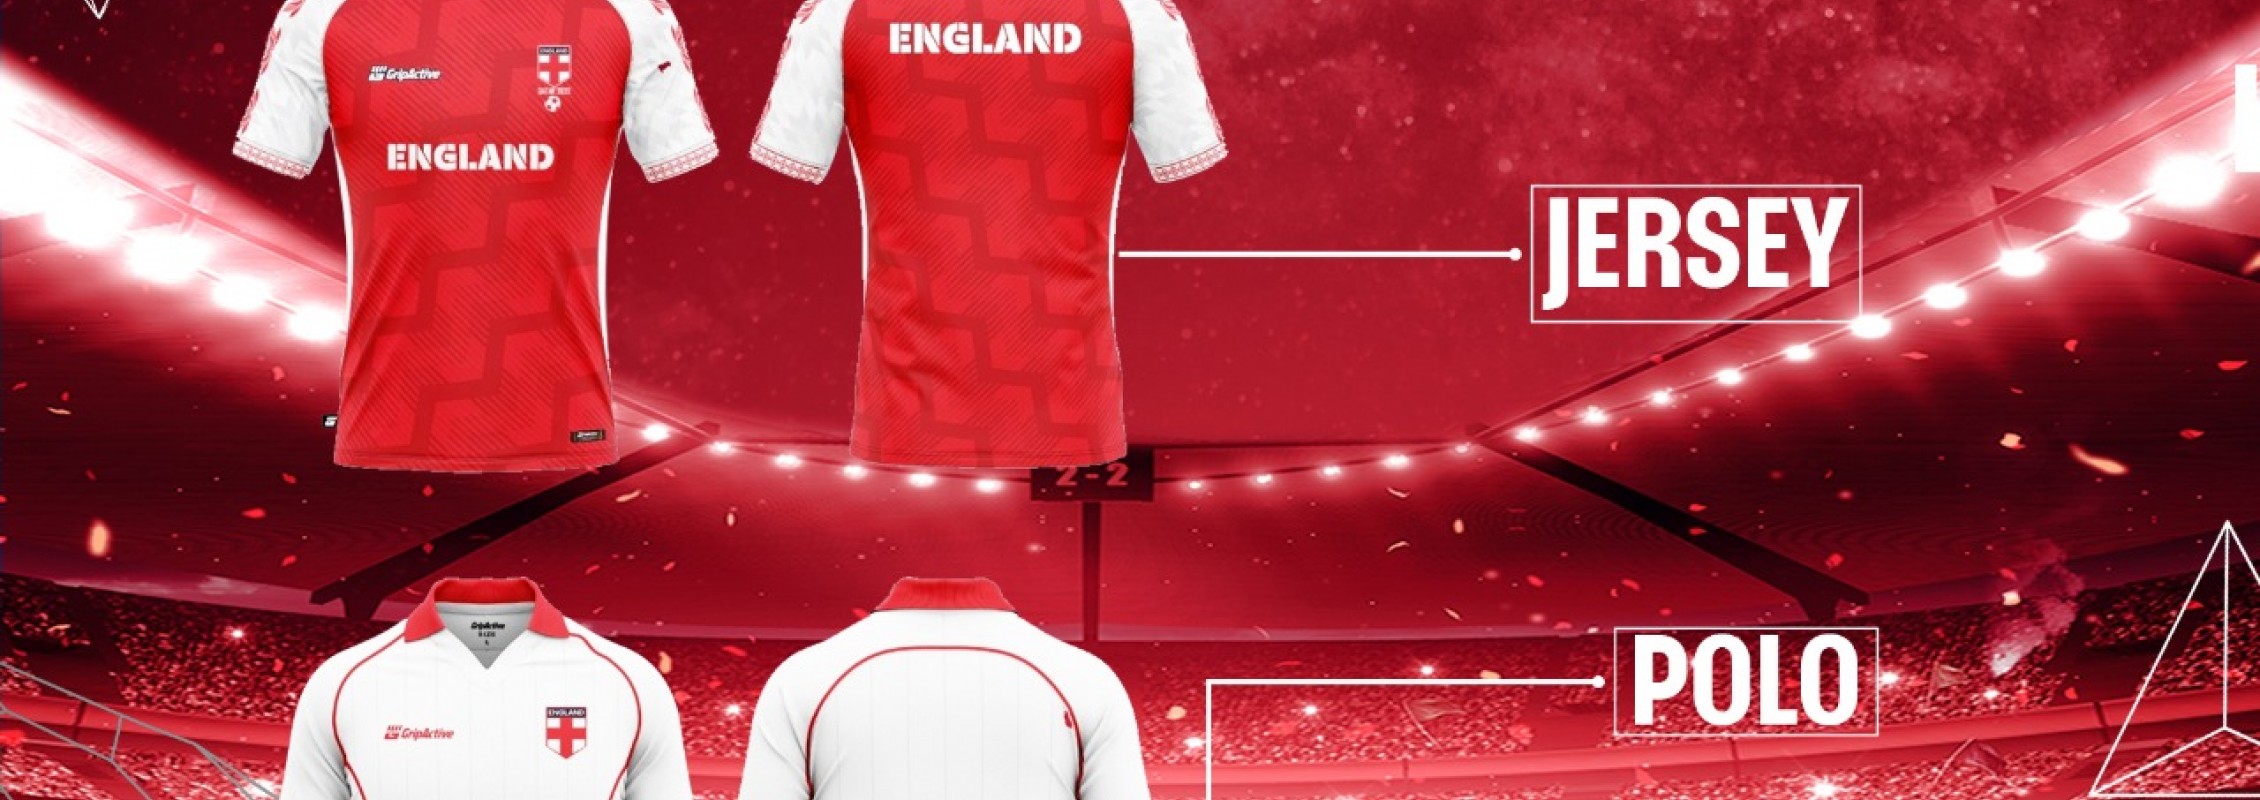 Where to Buy England Football Kit Replica England Football Kit